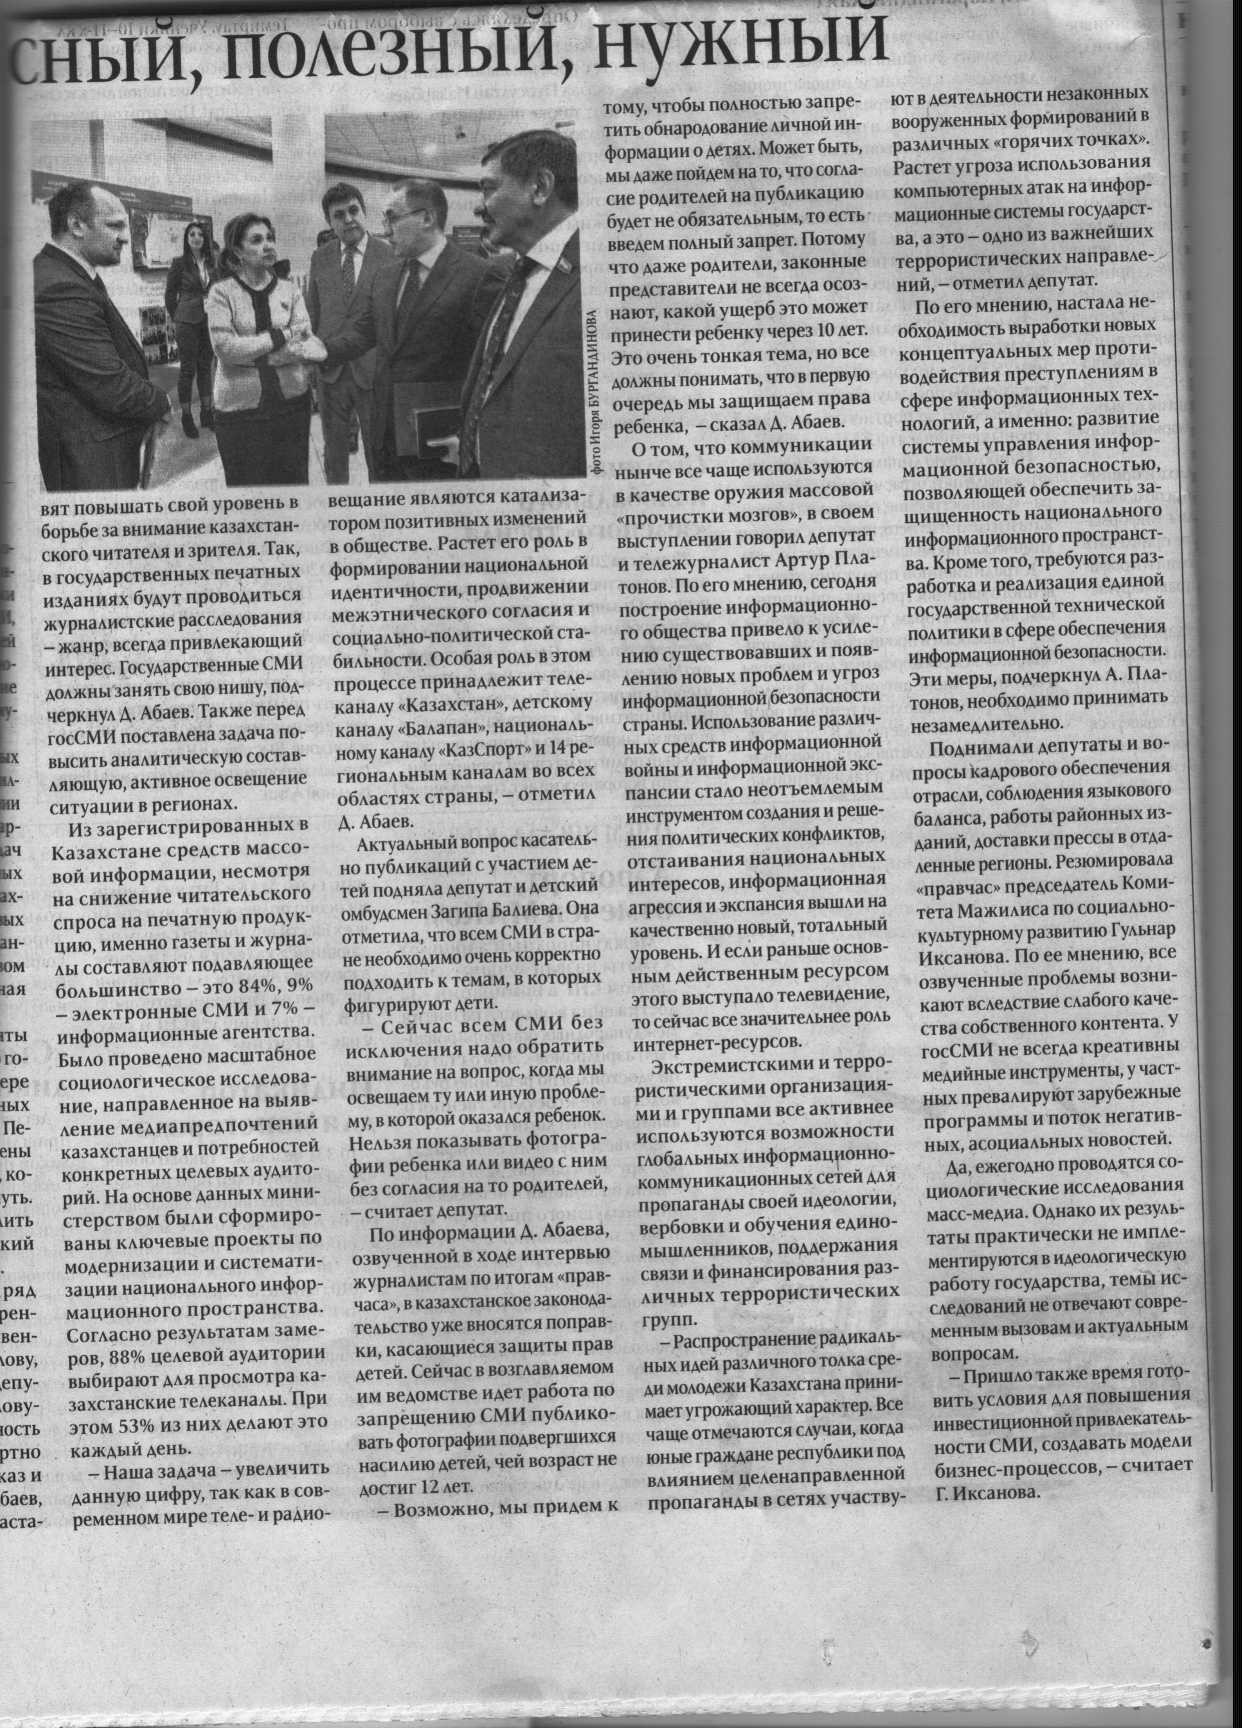 Статья в газете "Казахстанская правда" - "Контент безопасный, полезный, нужный" Л. Тусупбекова